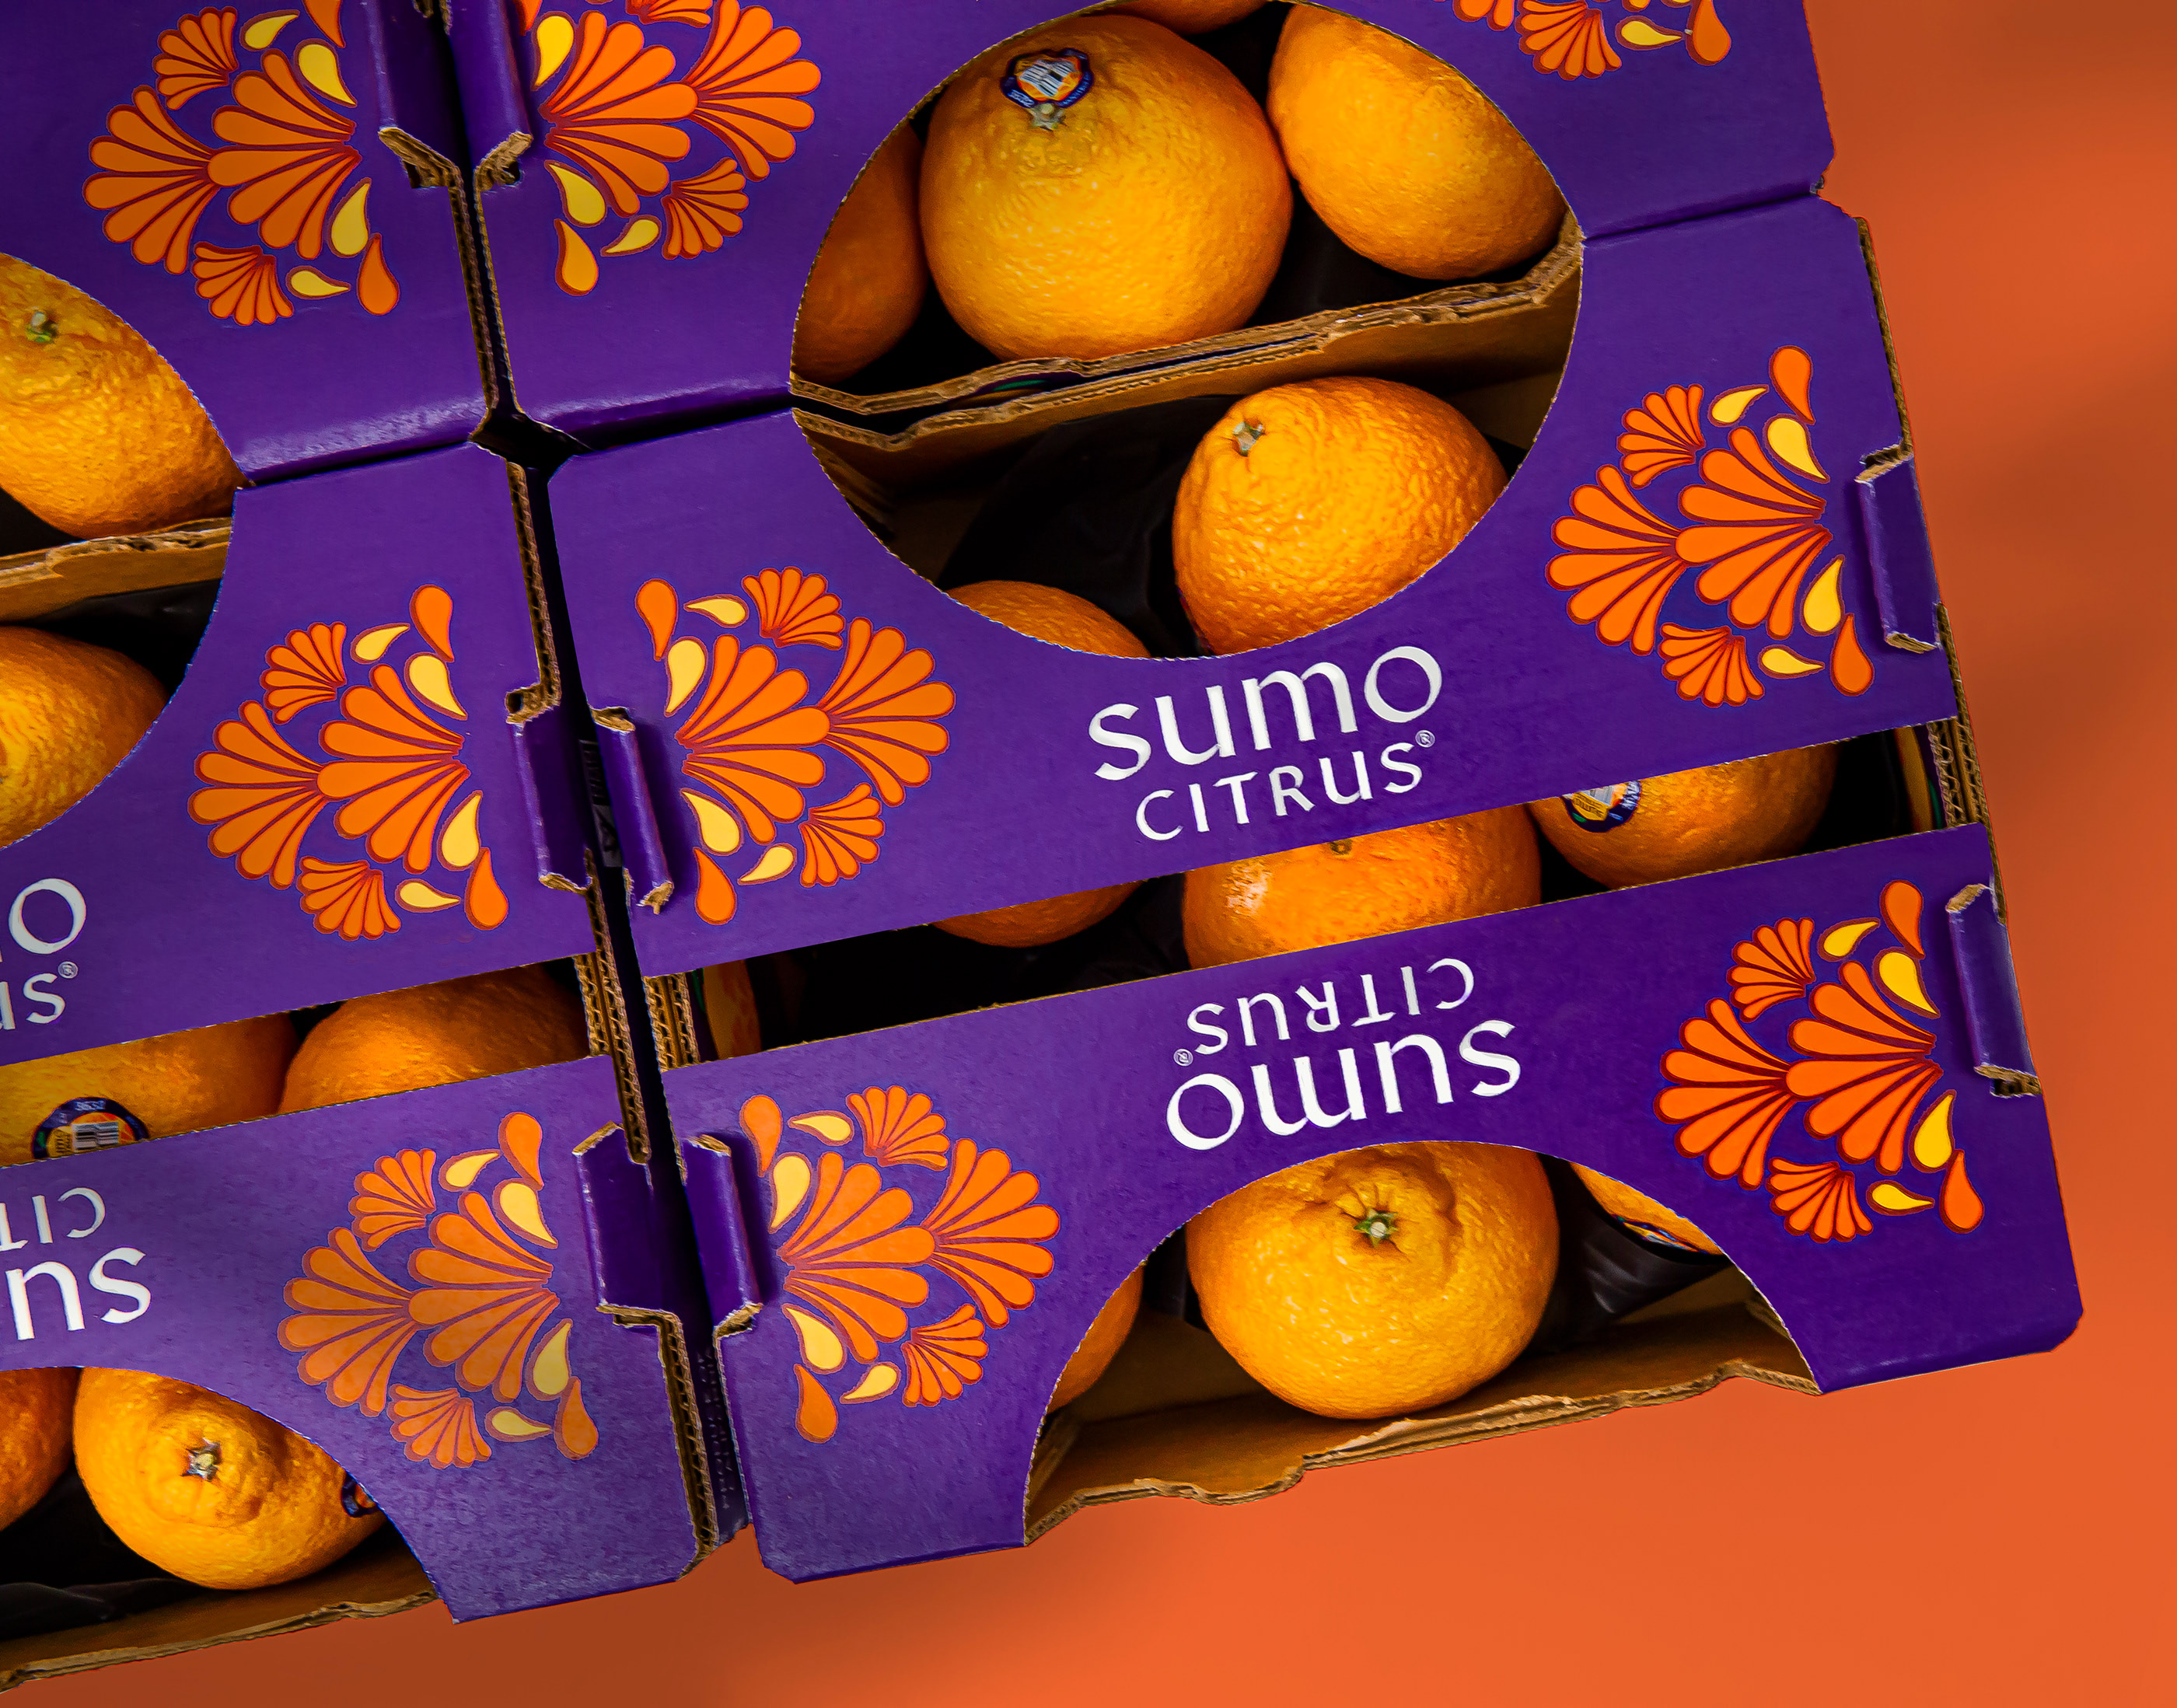 外国柑橘包装设计 柑橘包装设计哪家好 柑橘包装设计公司 第10张